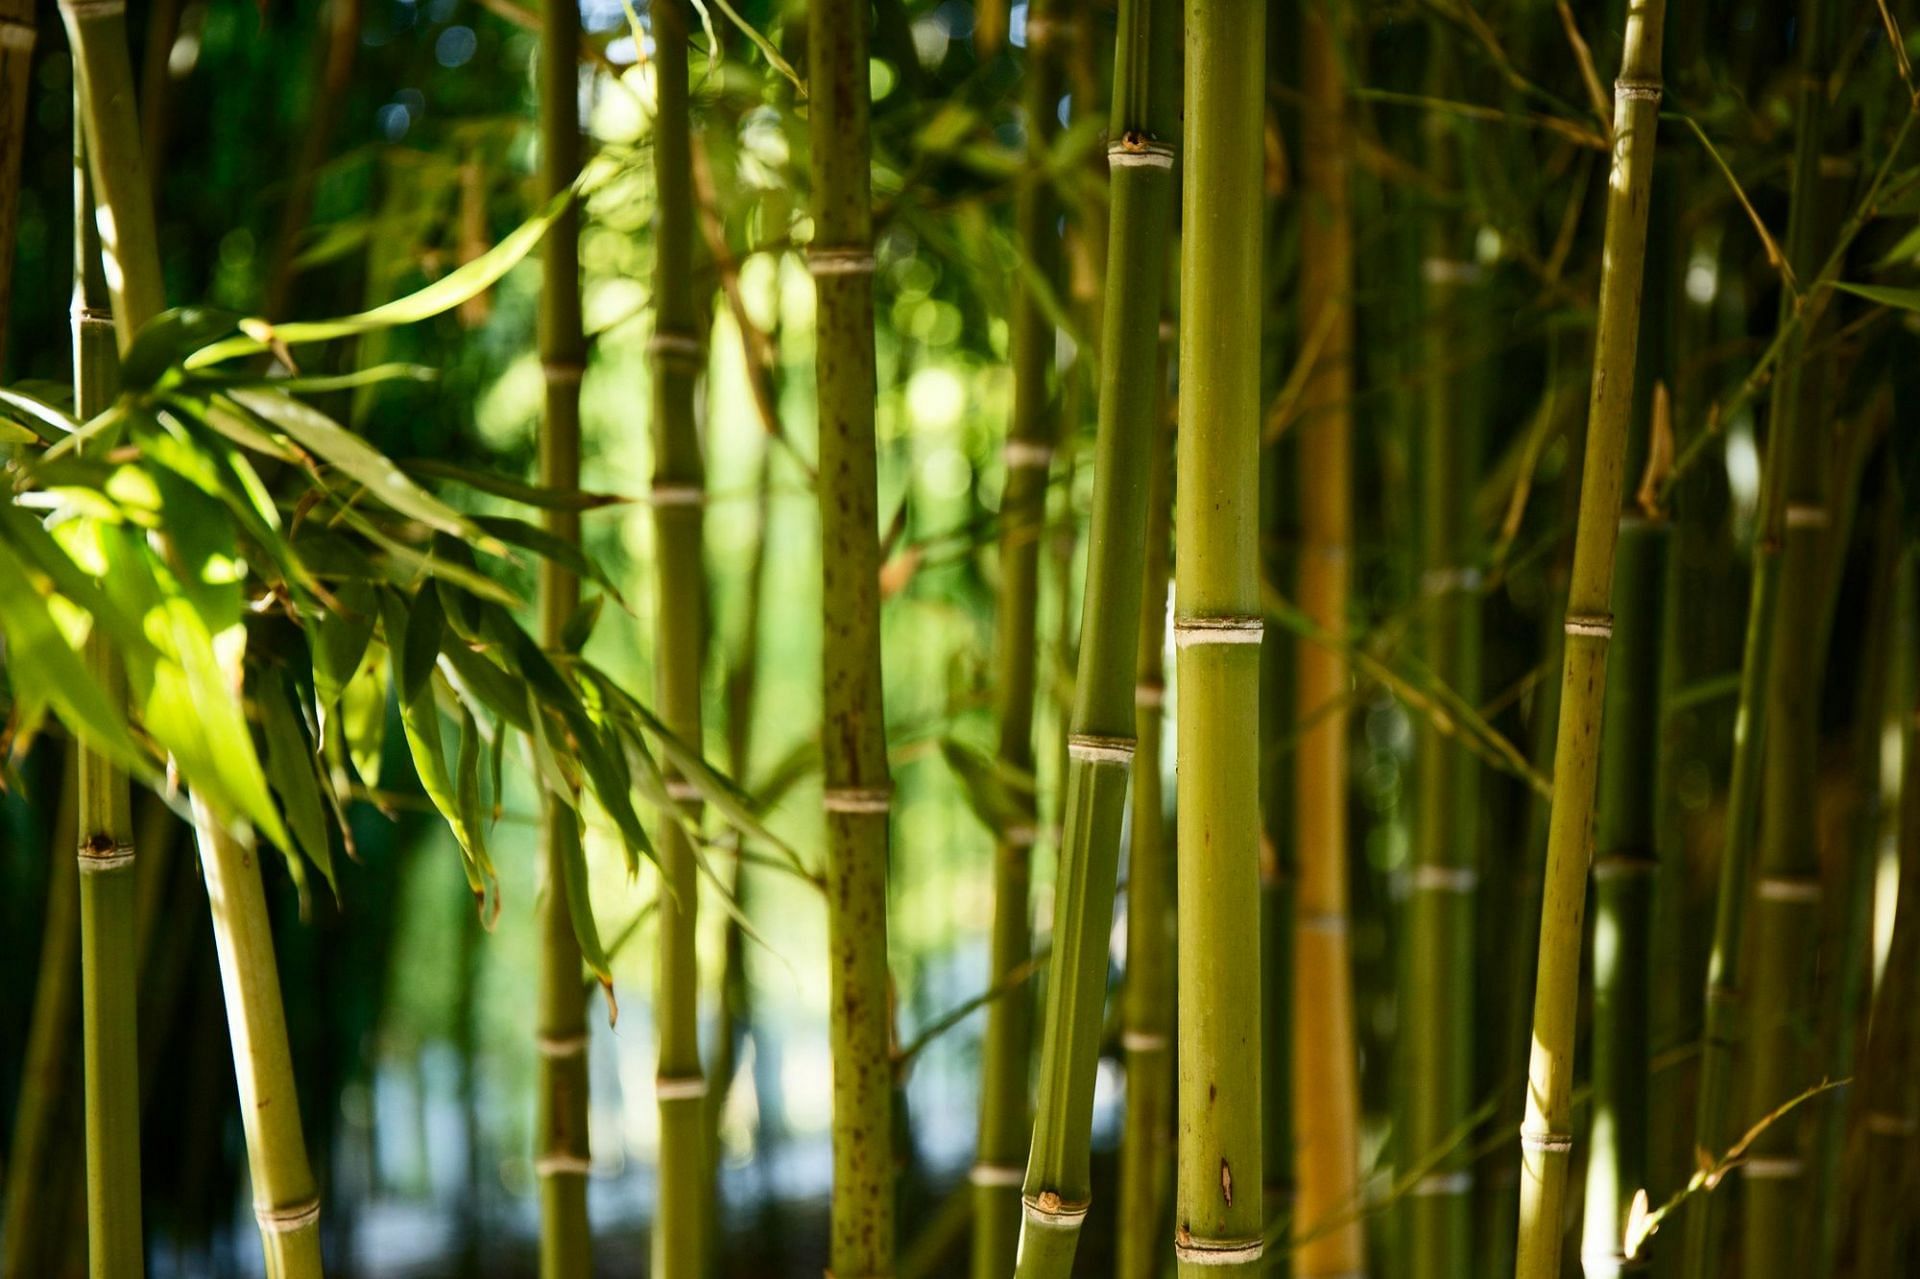 Bamboo shoots raw (Image by Freepik on Freepik)